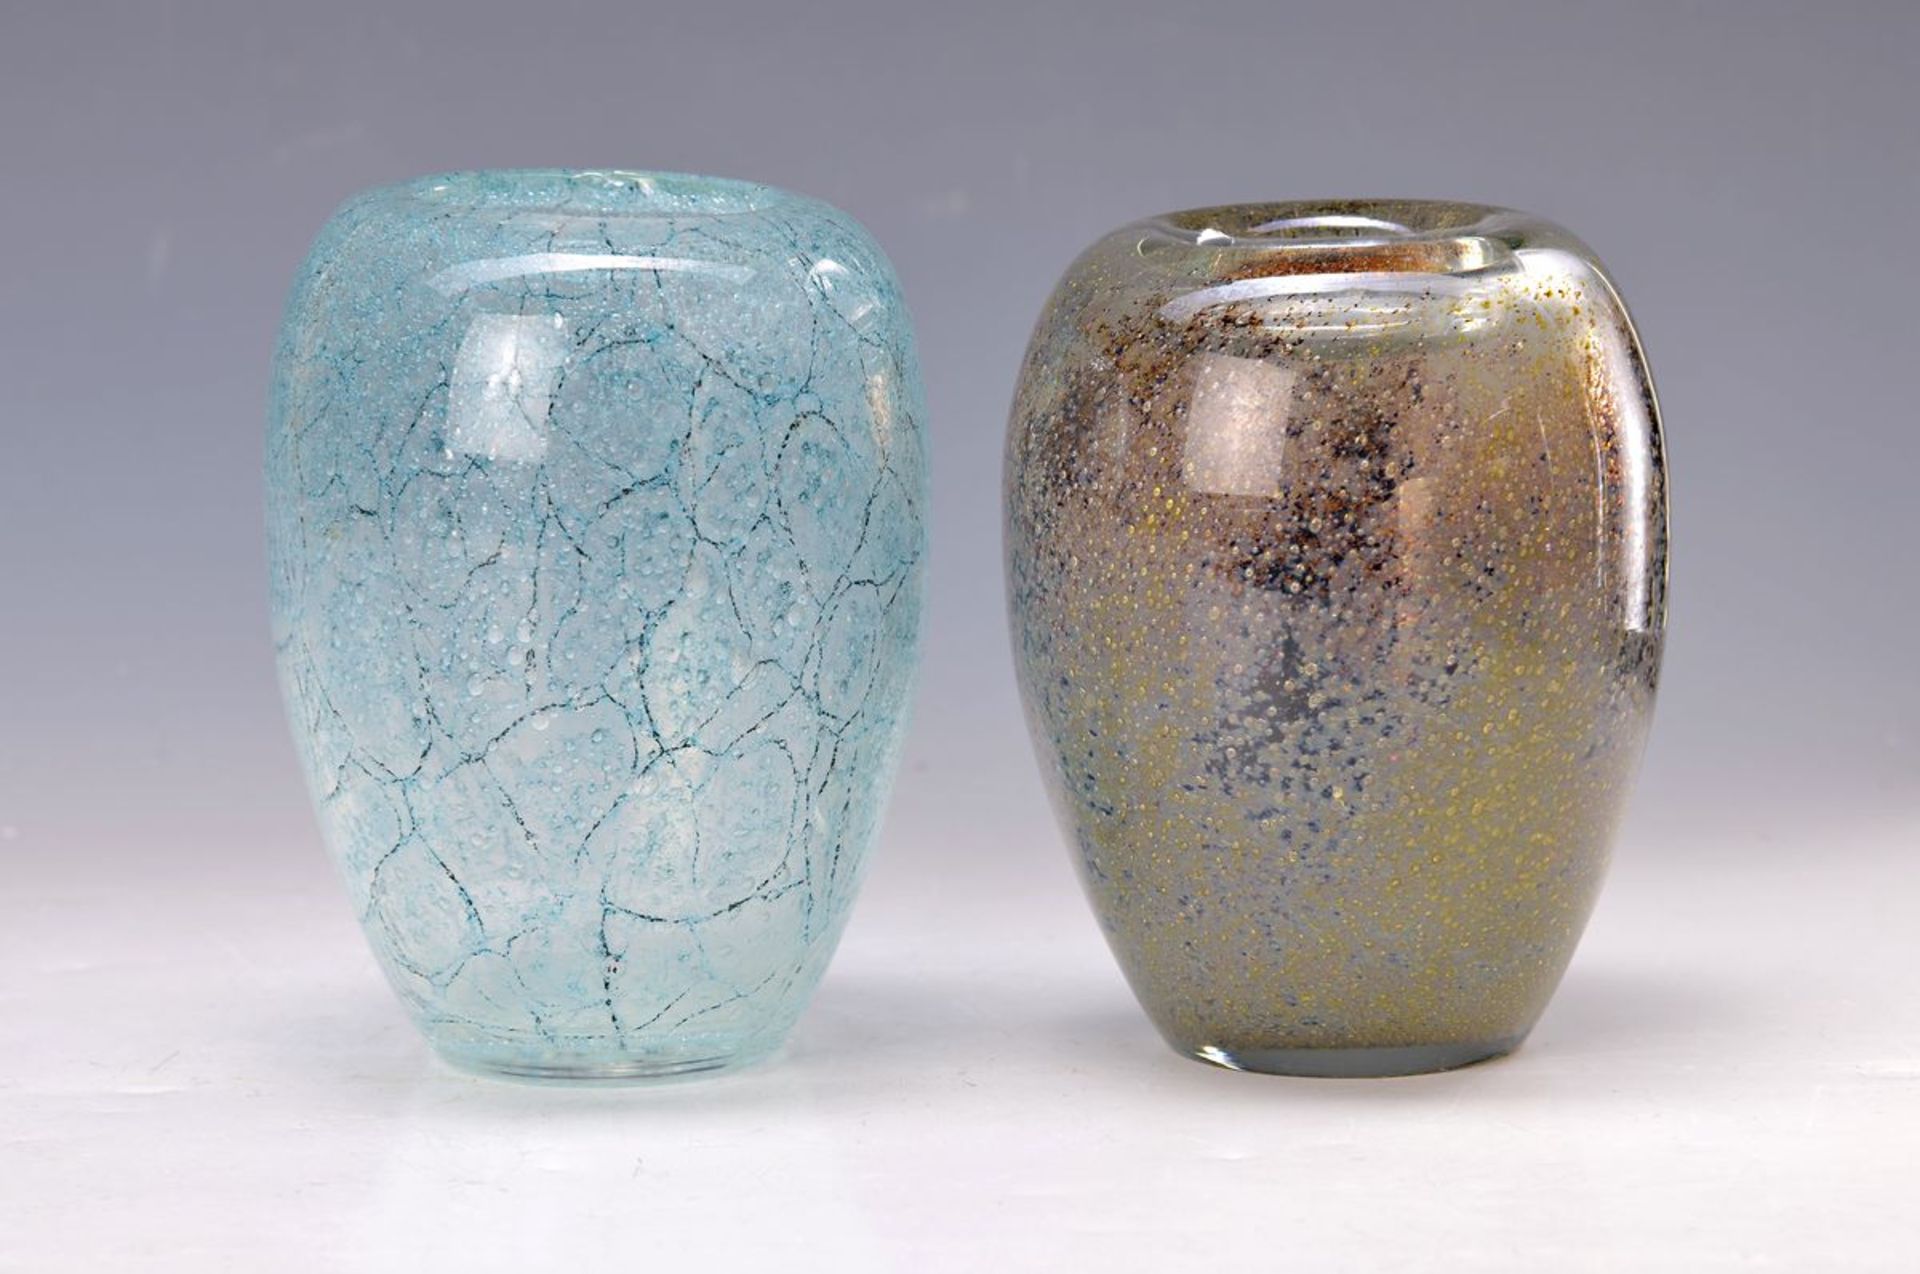 Zwei Vasen, deutsch, WMF, Entwurf Walter Dexel 1937, eiförmiger Glaskorpus, stark blasiges Glas,